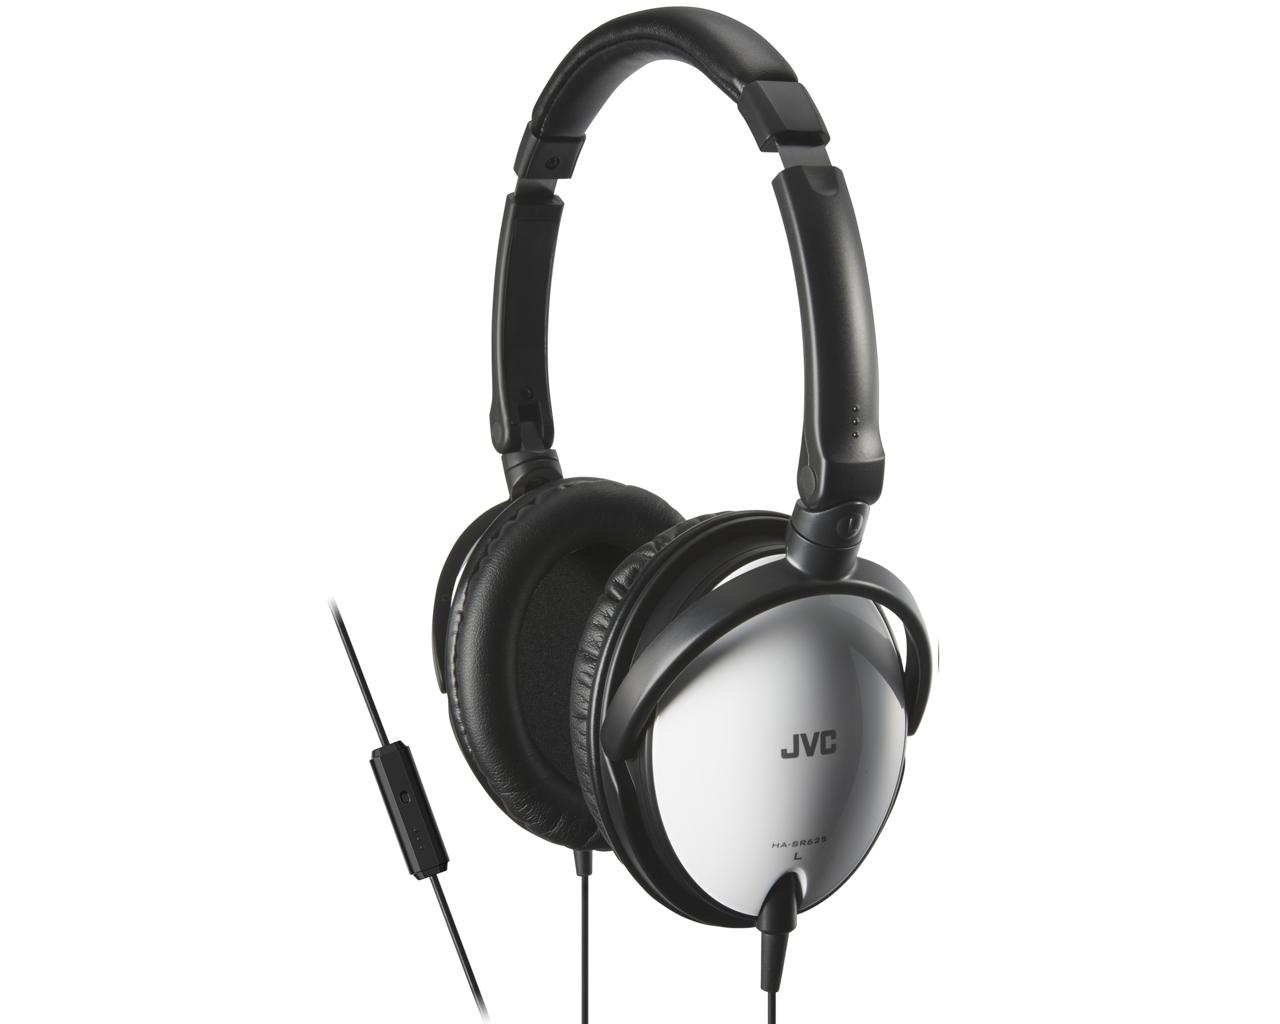 JVC HA-SR625-WE Slušalice sa mikrofonom i drajverima od 40 mm komatibilne sa iPod, iPhone, iPad, Android i BlackBerry uređajima.